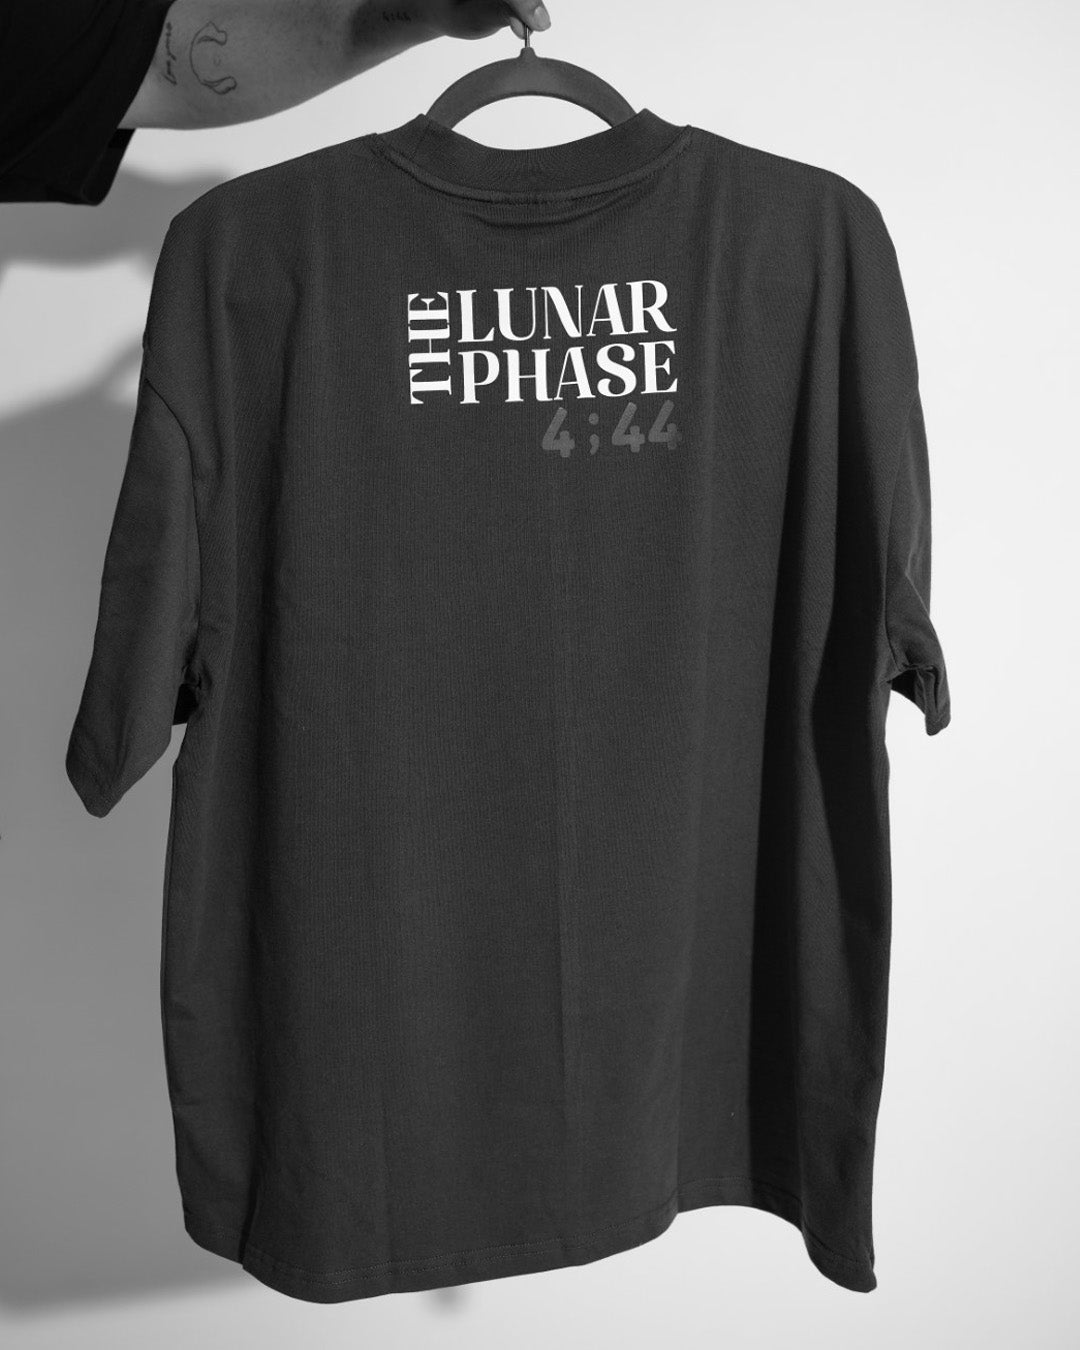 The Phase Tshirt